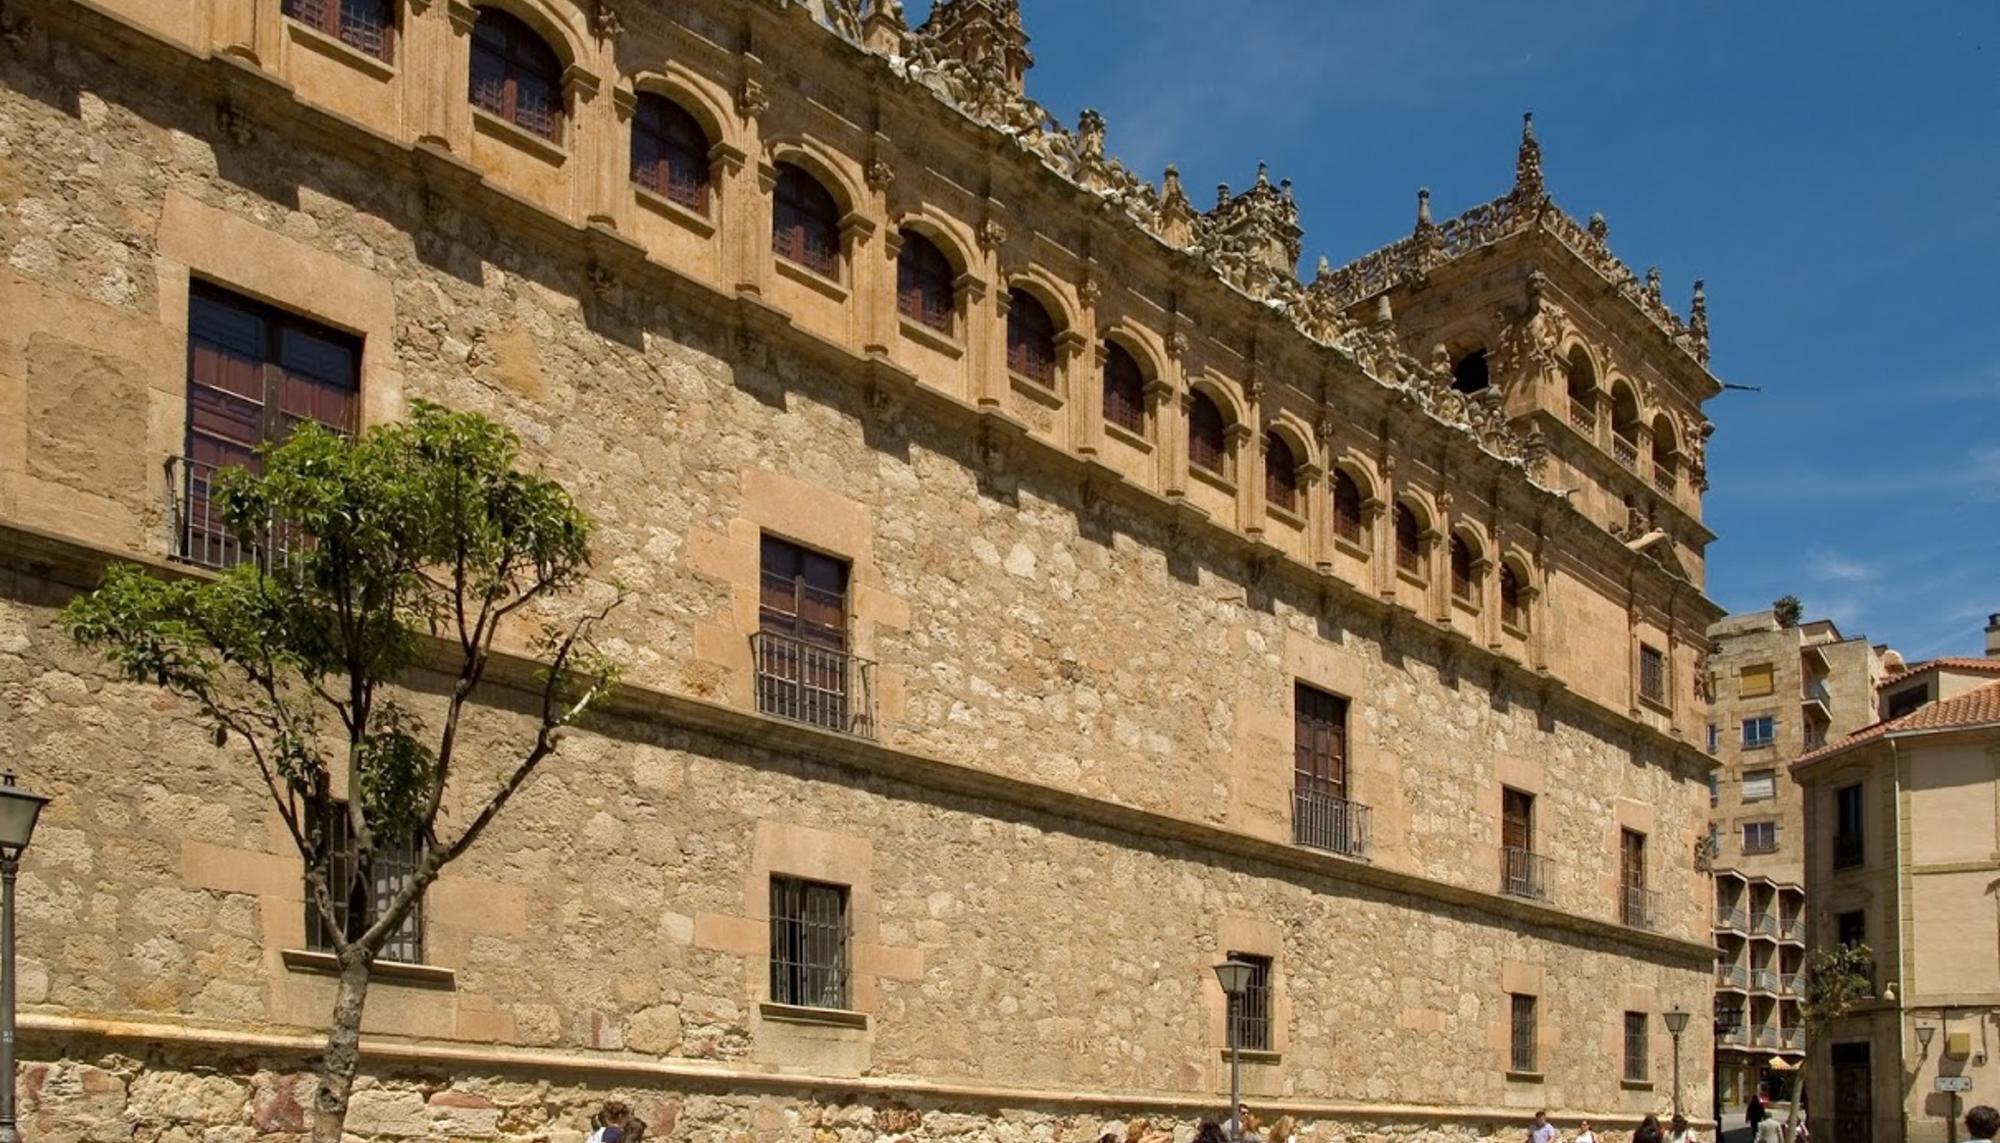 El Palacio de Monterrey está situado en el centro histórico de Salamanca